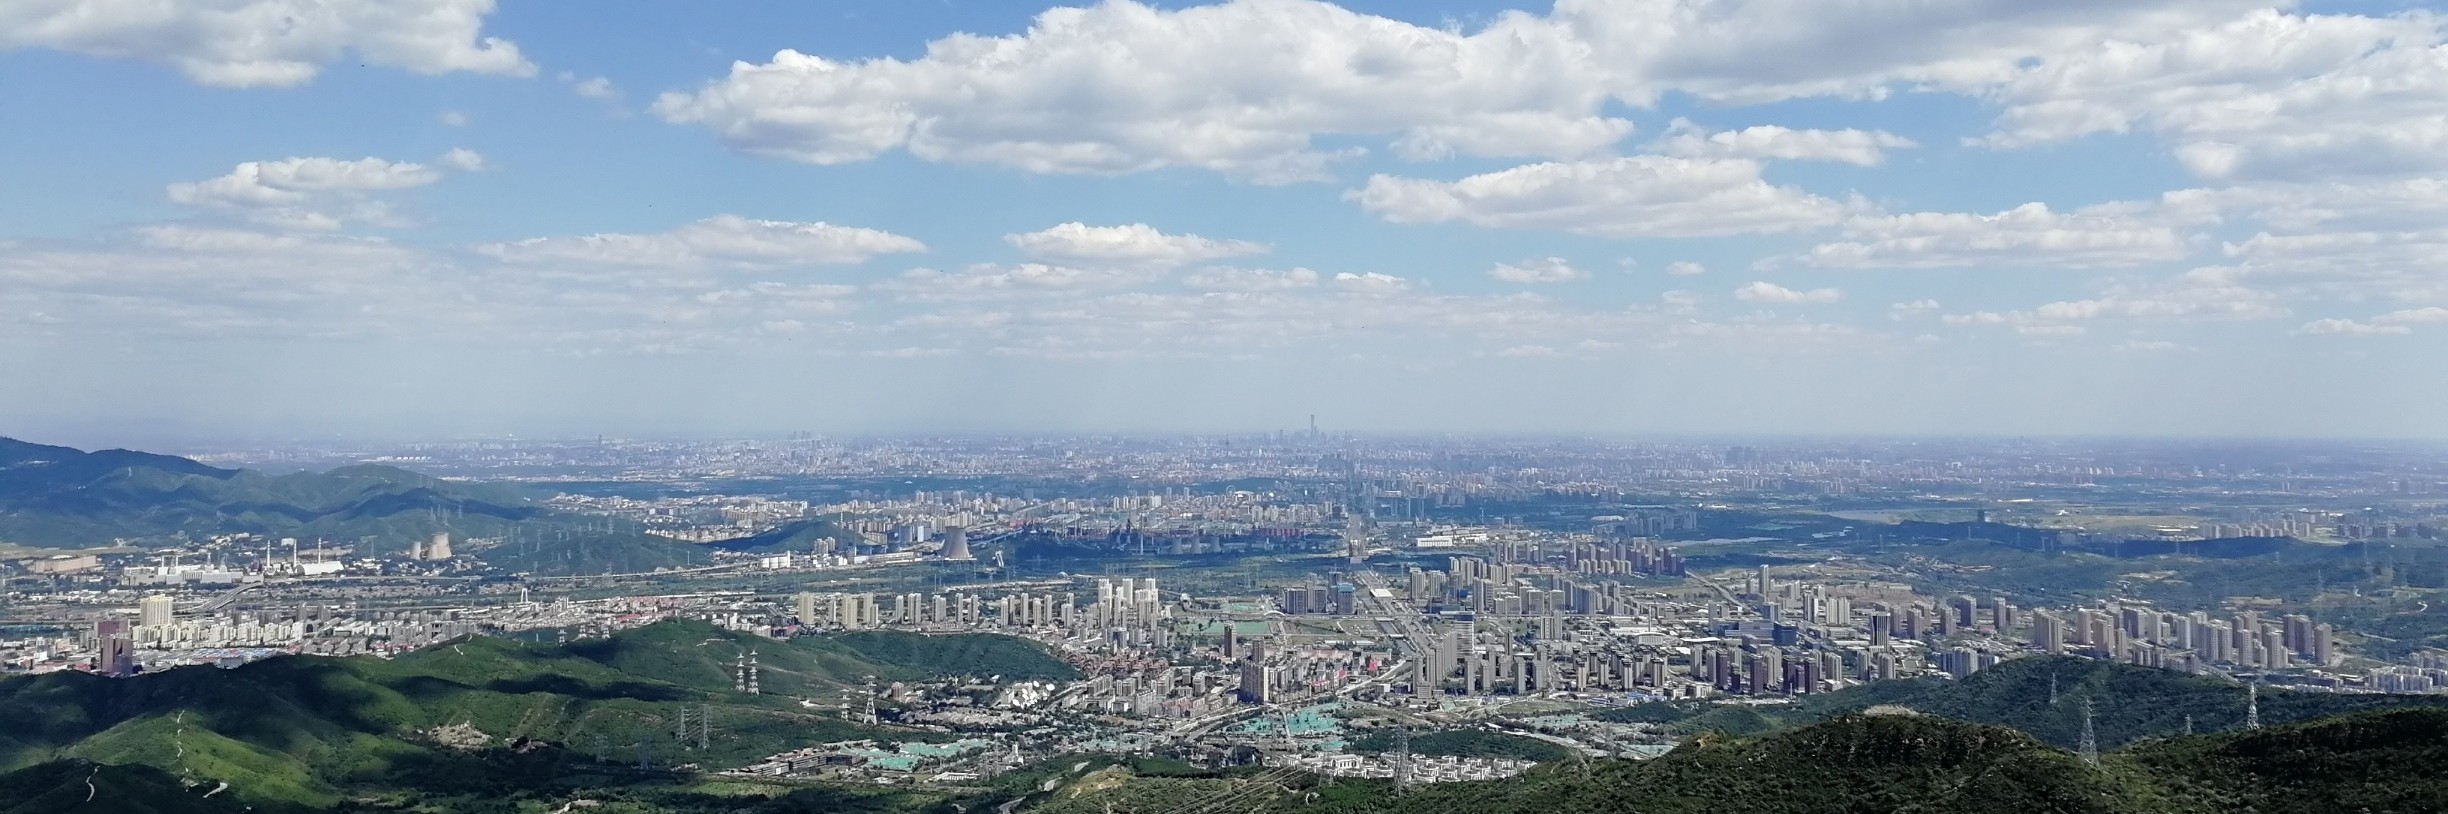 登顶定都阁 俯瞰北京城